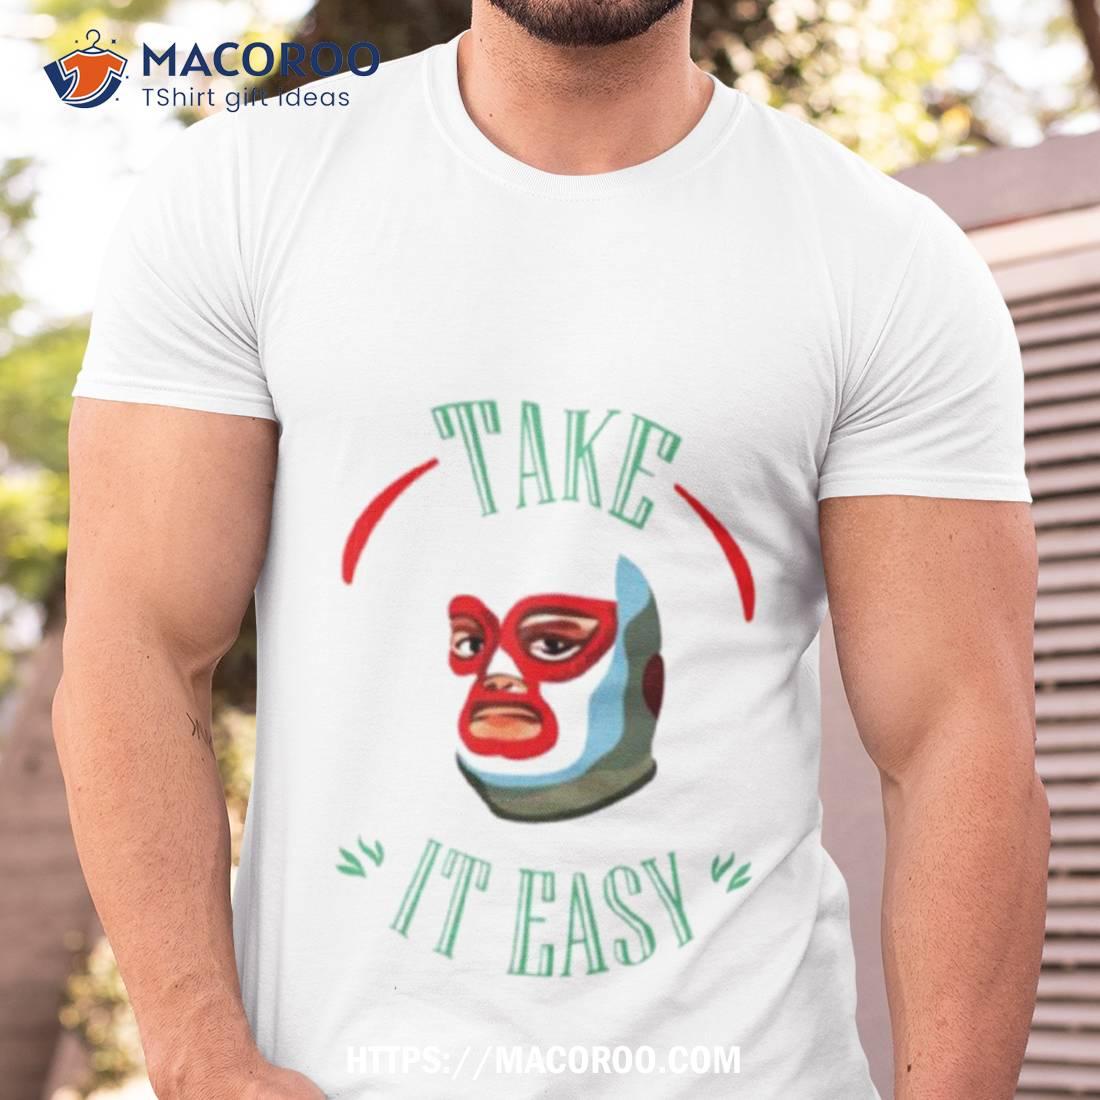 Take It Easy Shirt Tshirt